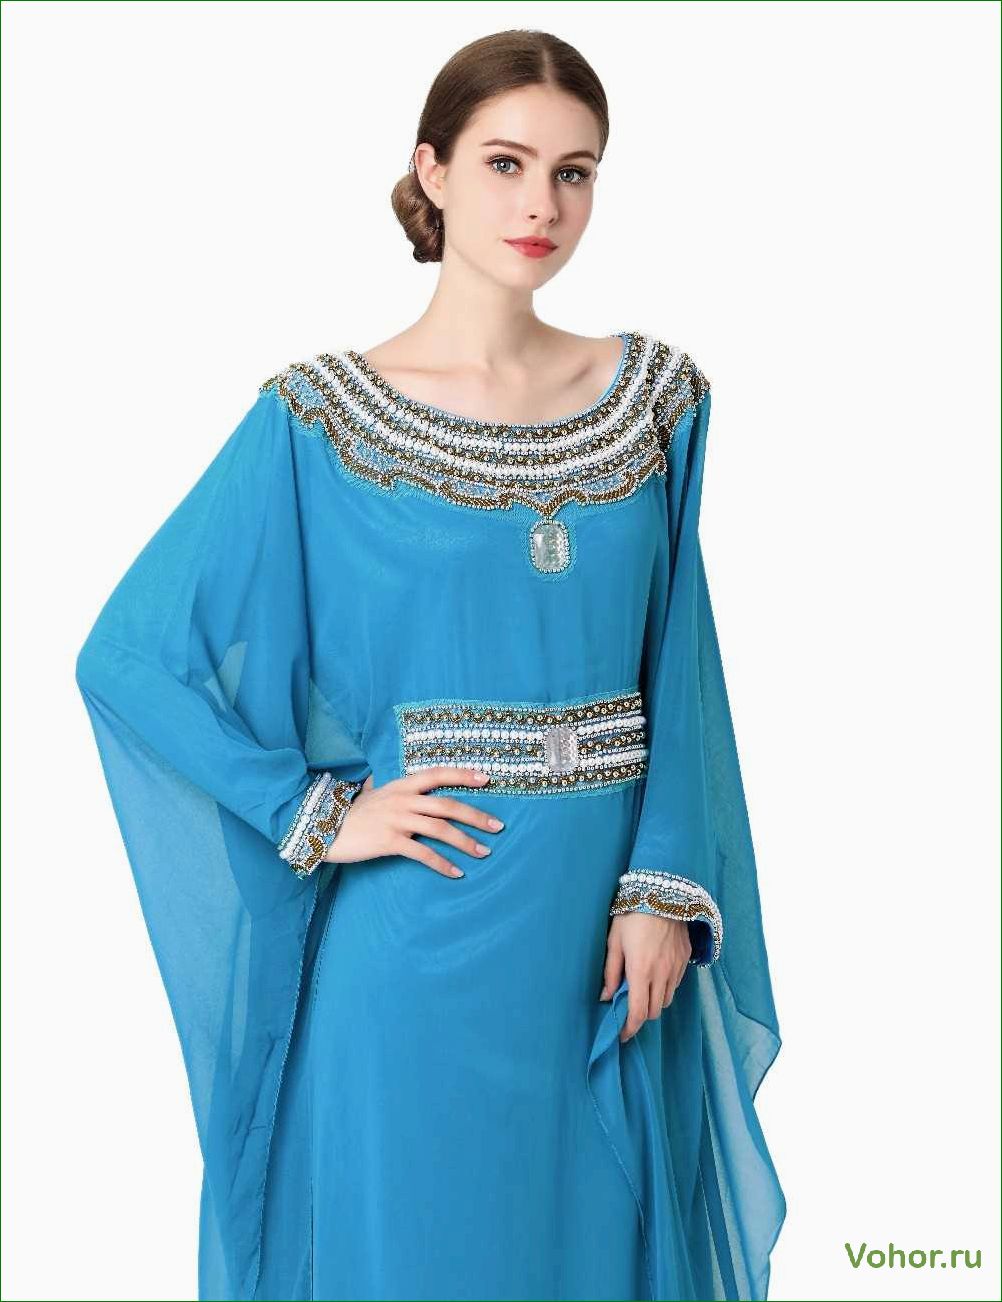 Турецкие платья для женщин